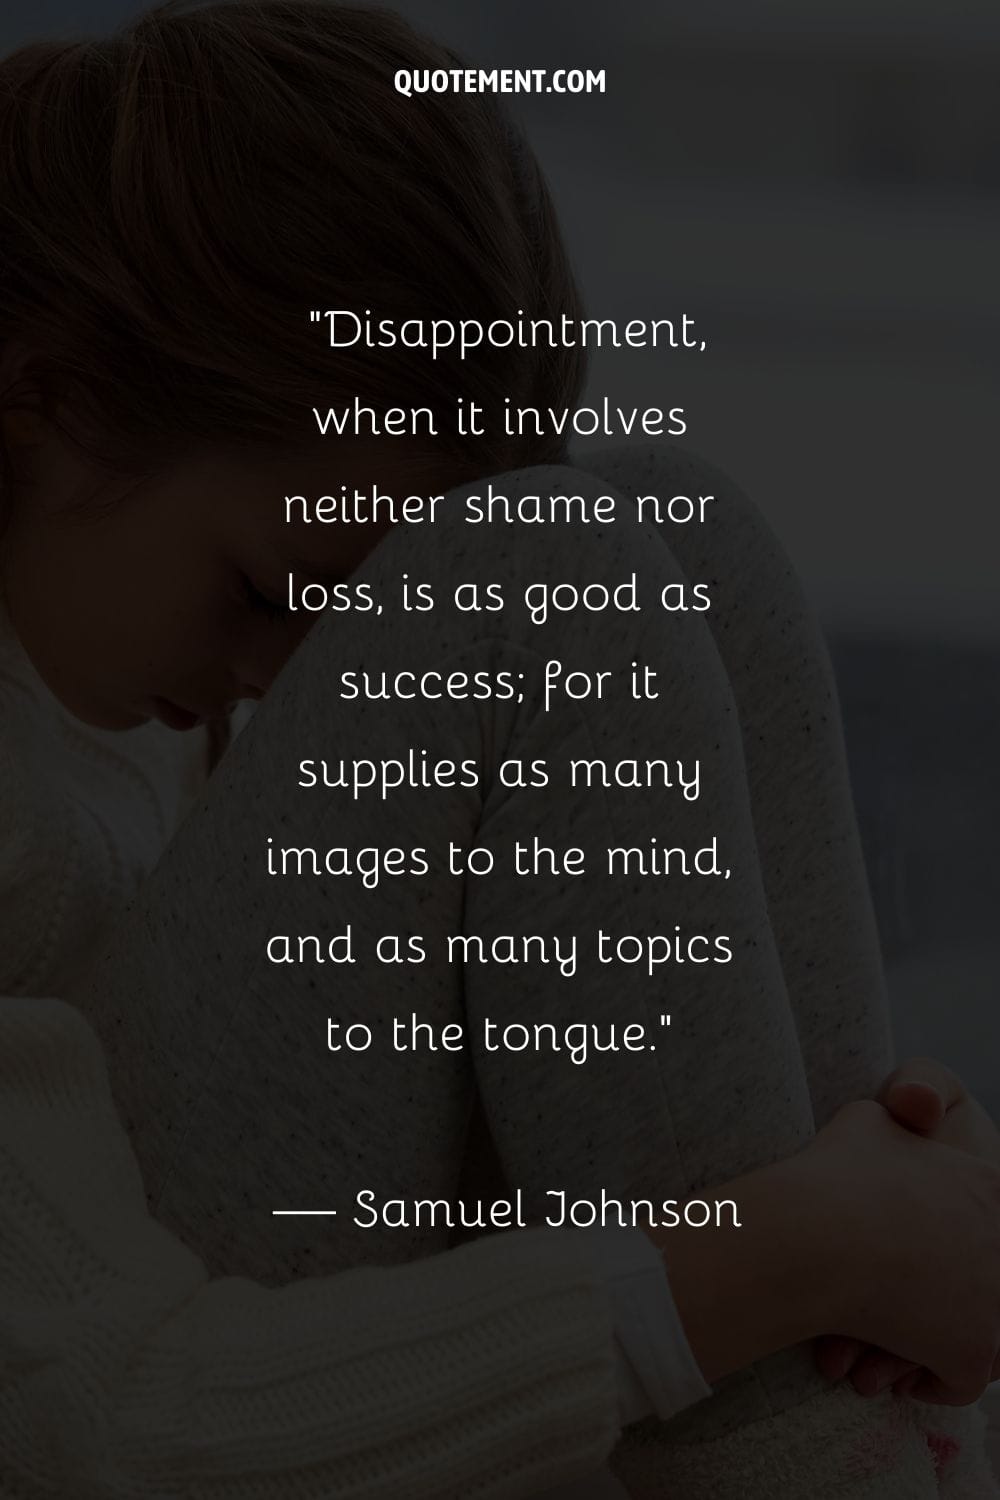 La decepción, cuando no implica vergüenza ni pérdida, es tan buena como el éxito